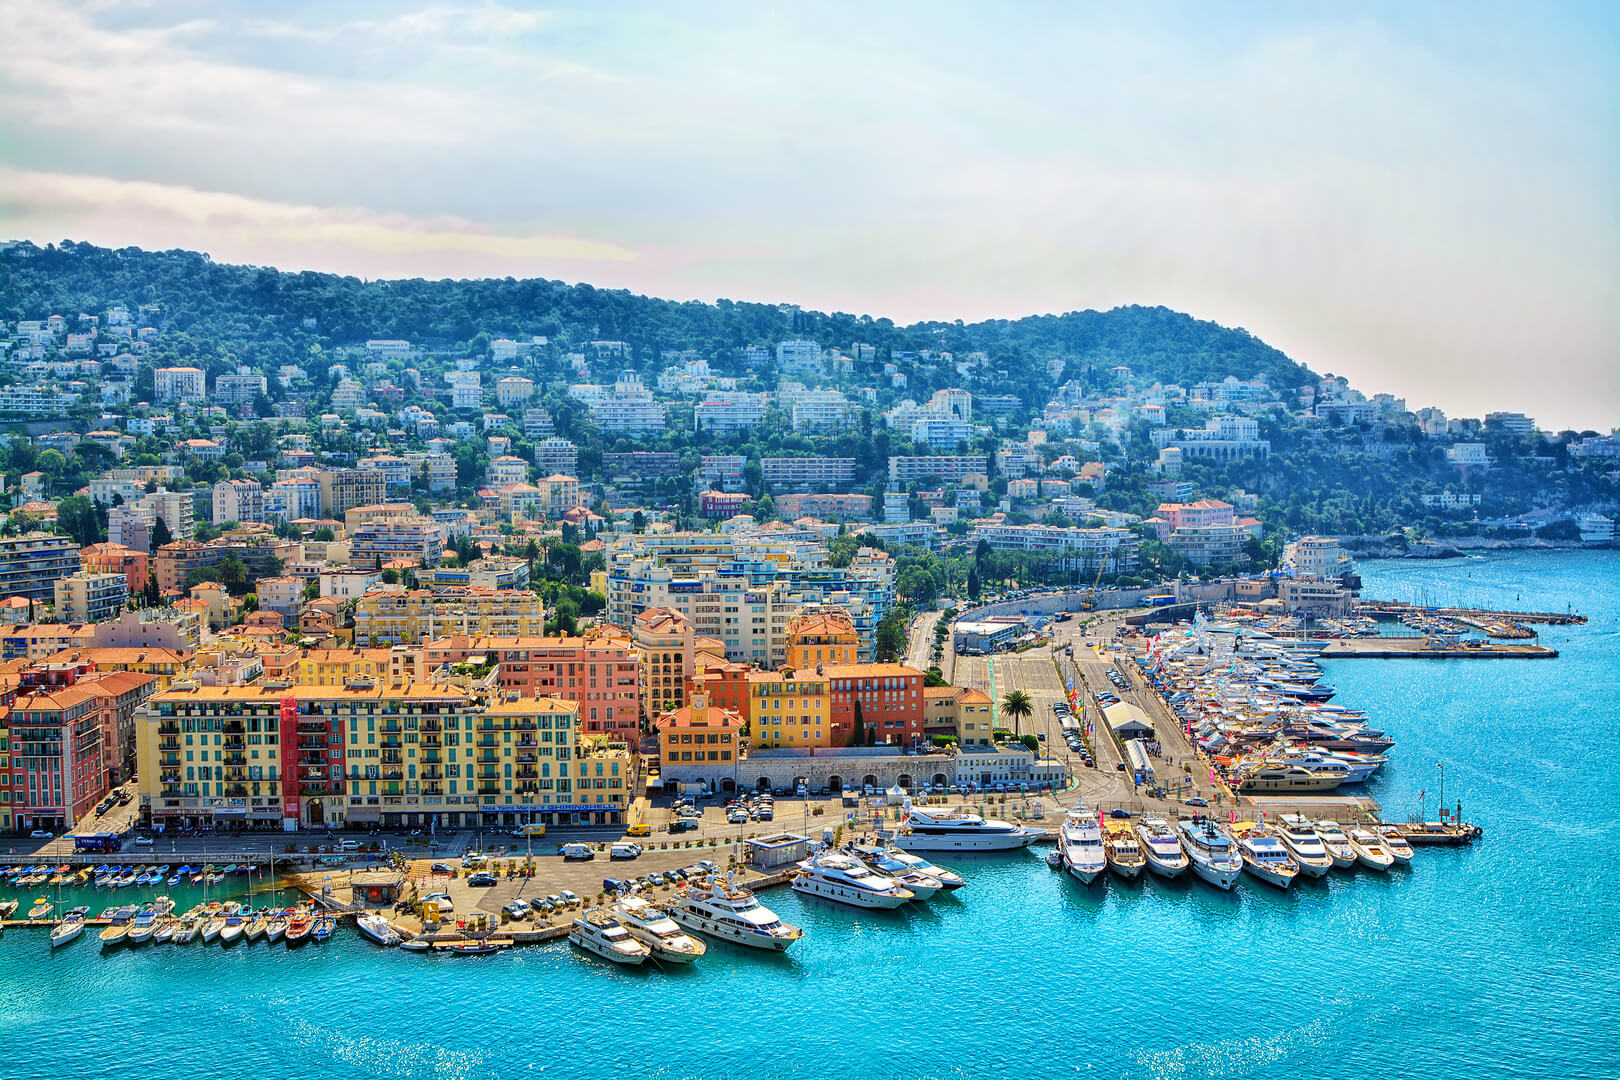 Côte d'Azur France. Belle vue panoramique sur Nice, France. Station balnéaire de luxe de la Côte d'Azur